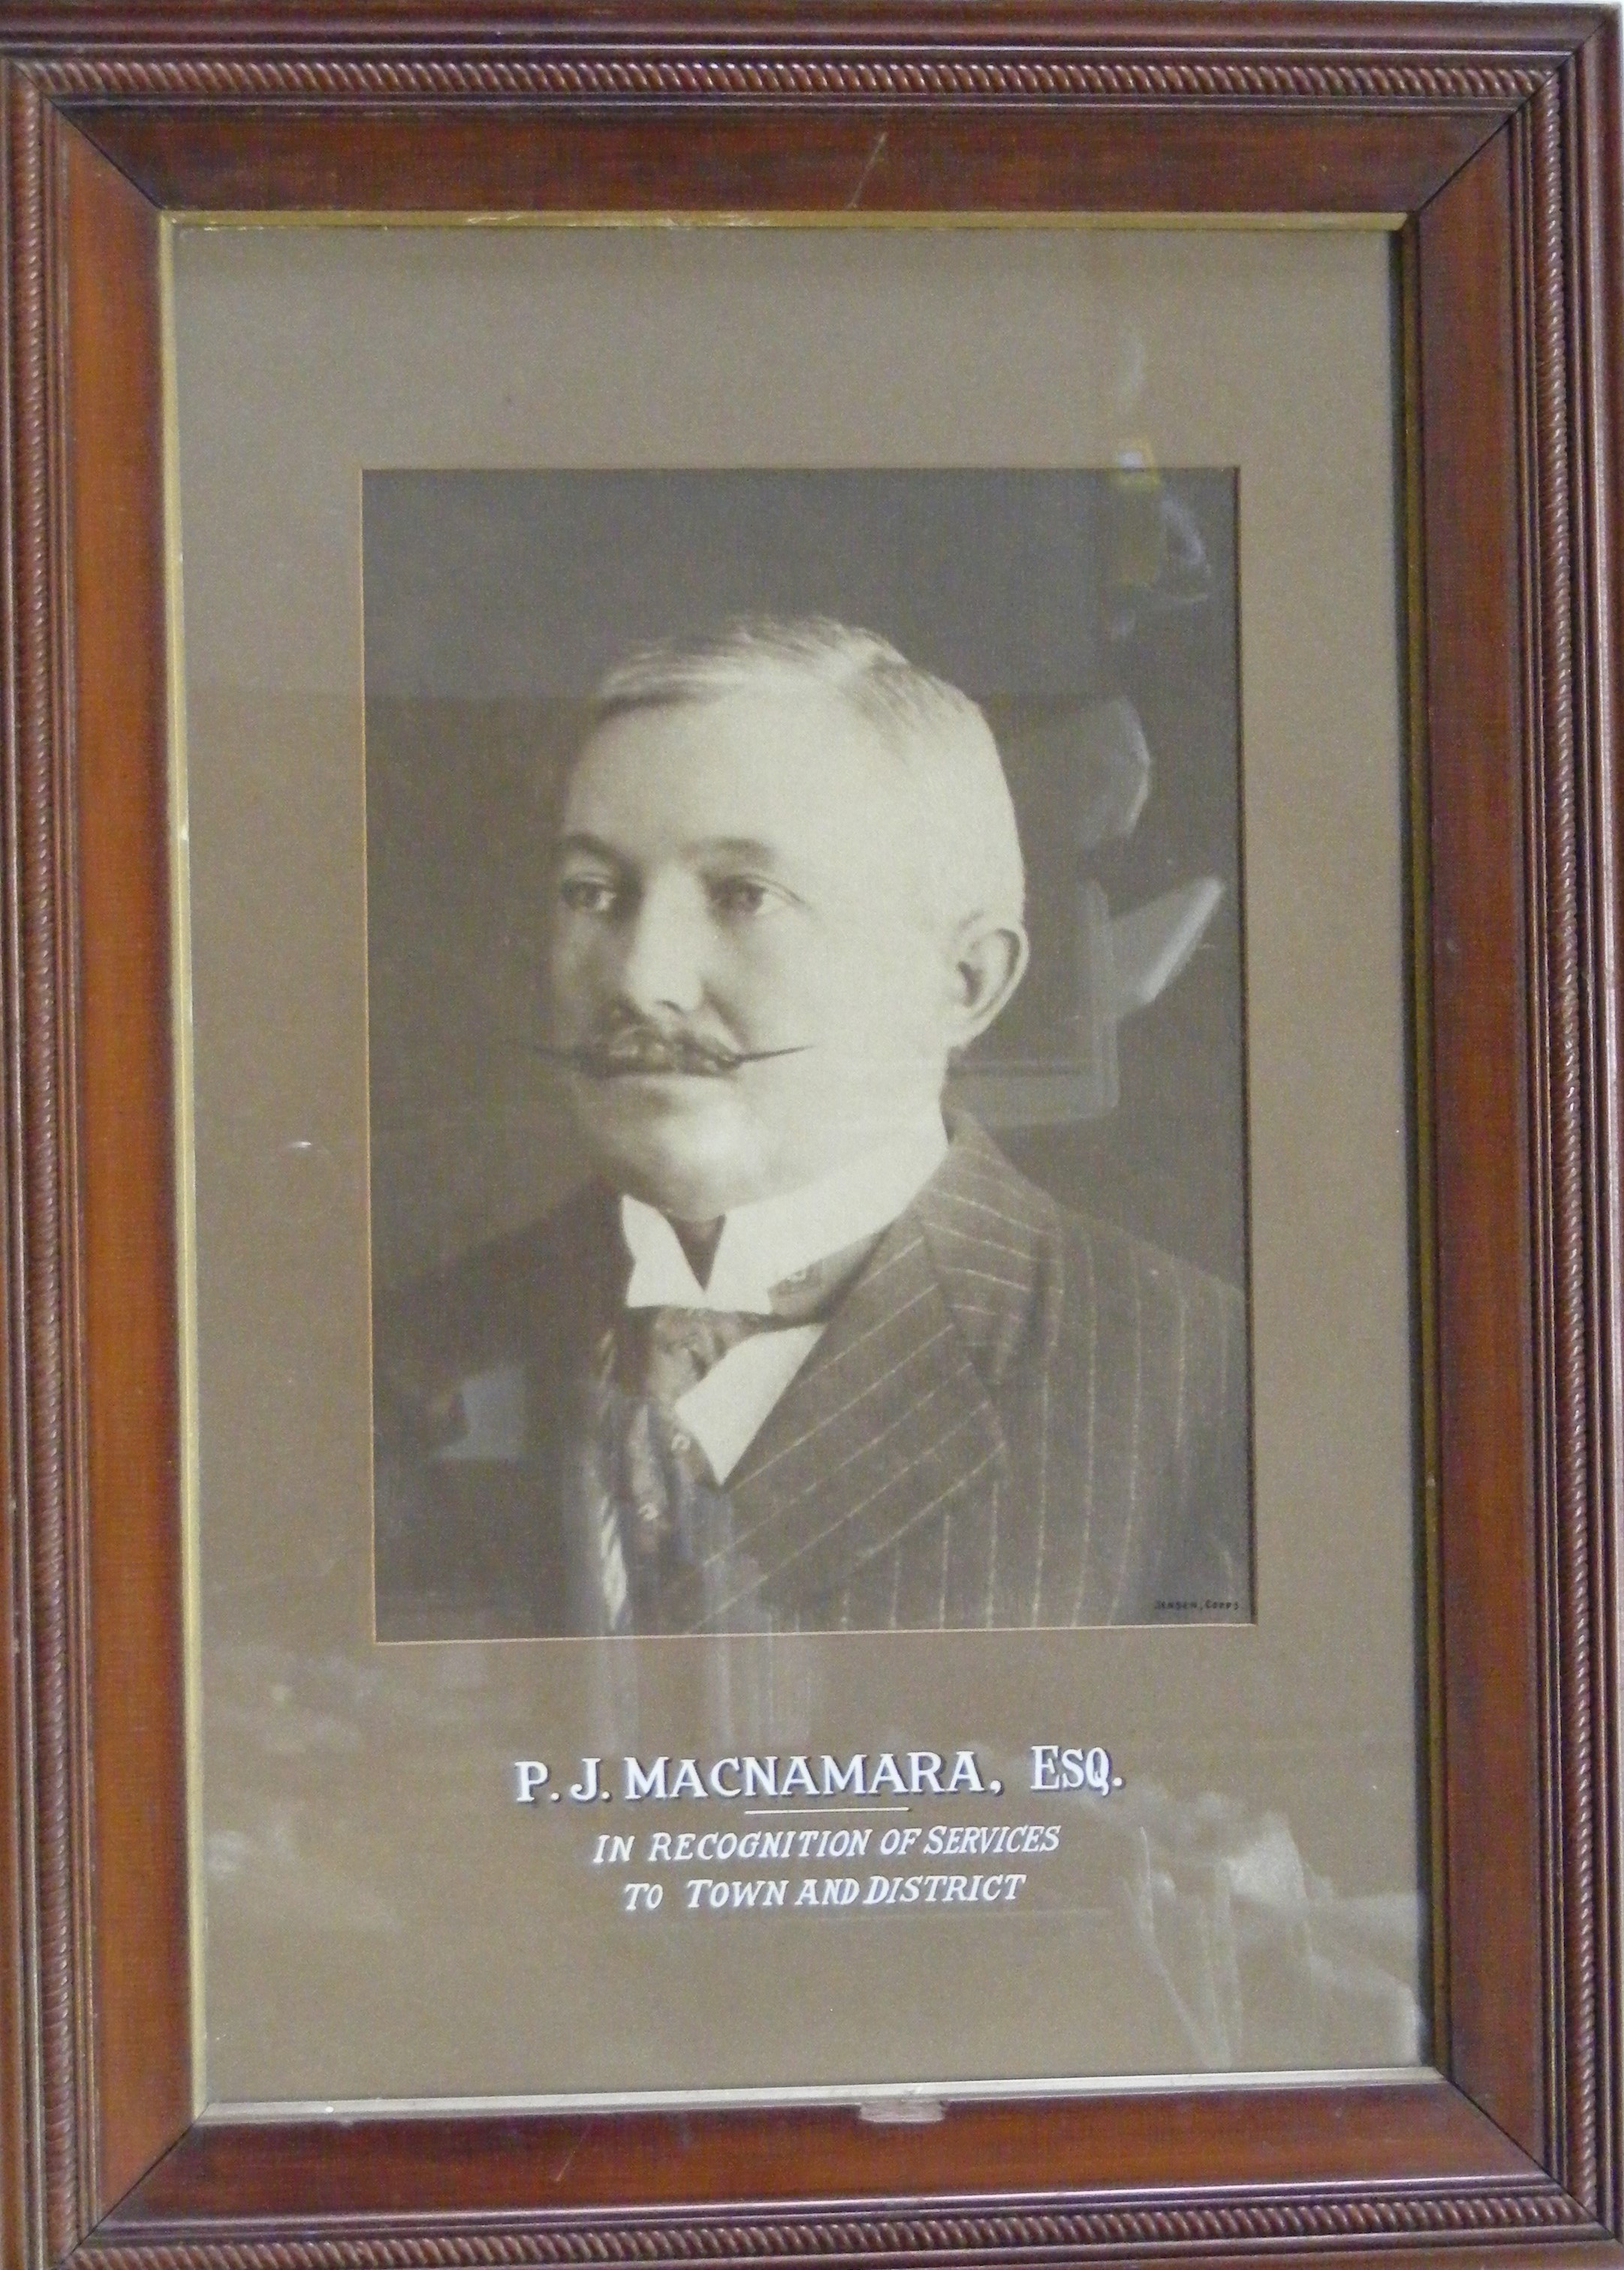 P. J. McNamara